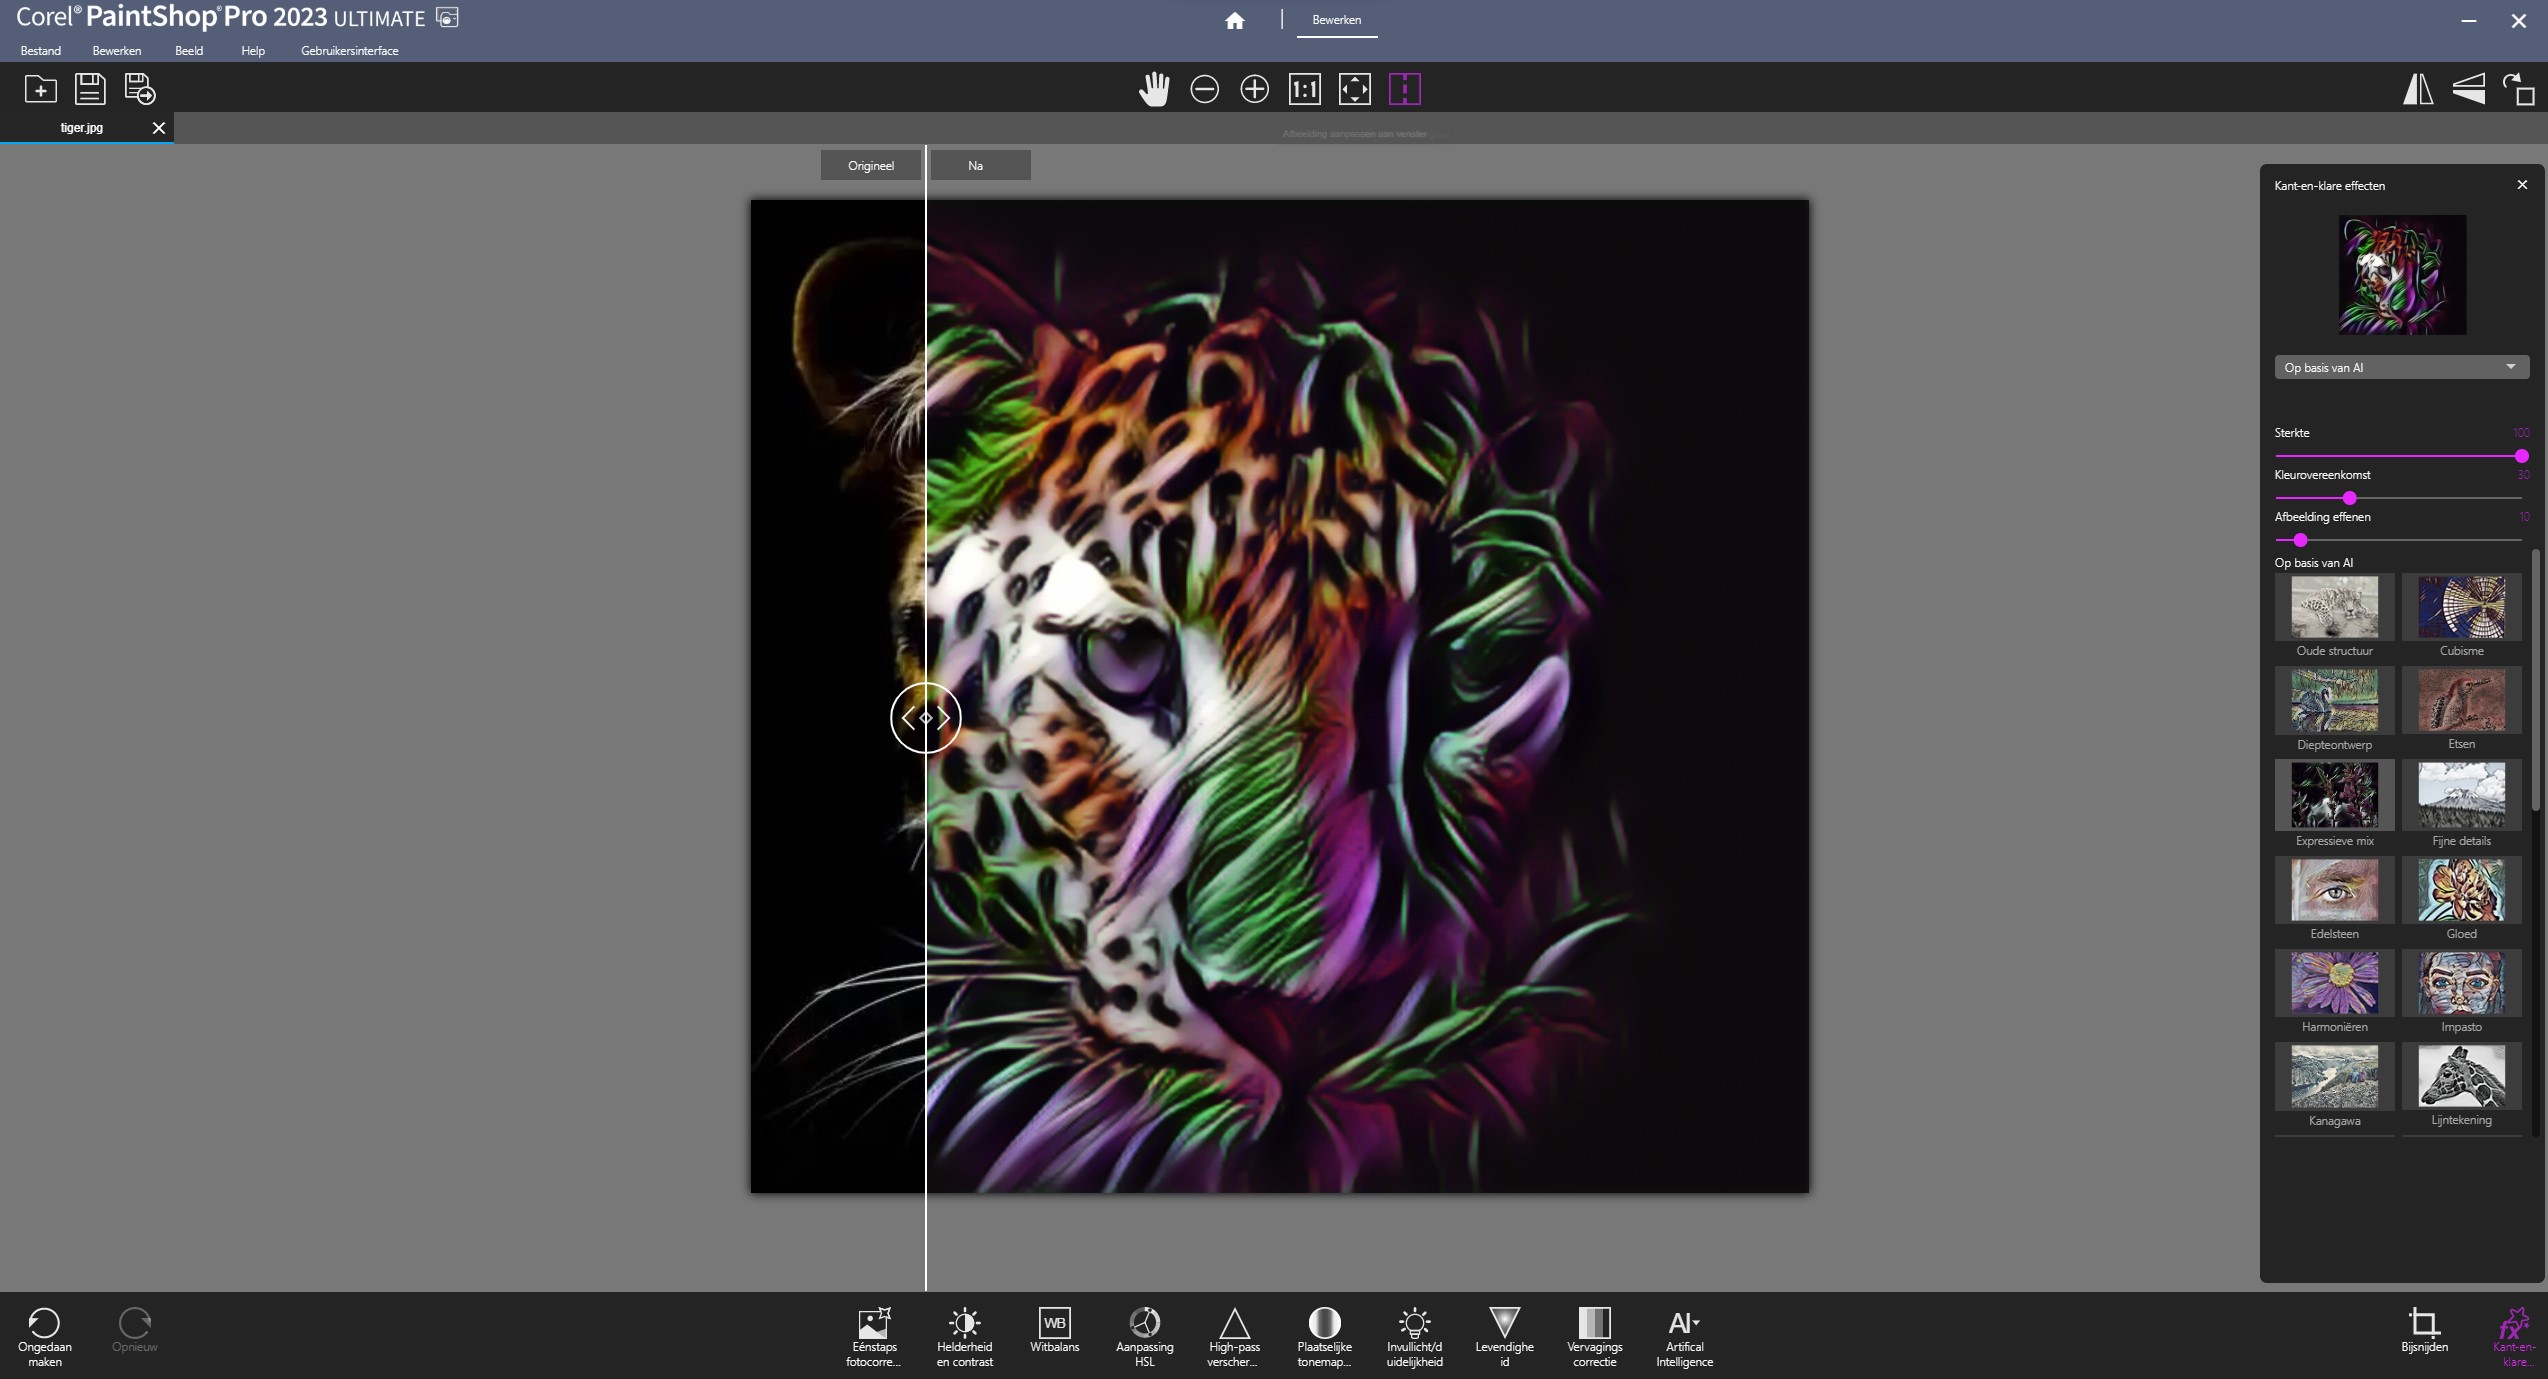 Corel PaintShop Pro 2023 Ultimate 25.2.0.58 (x64) Multilingual